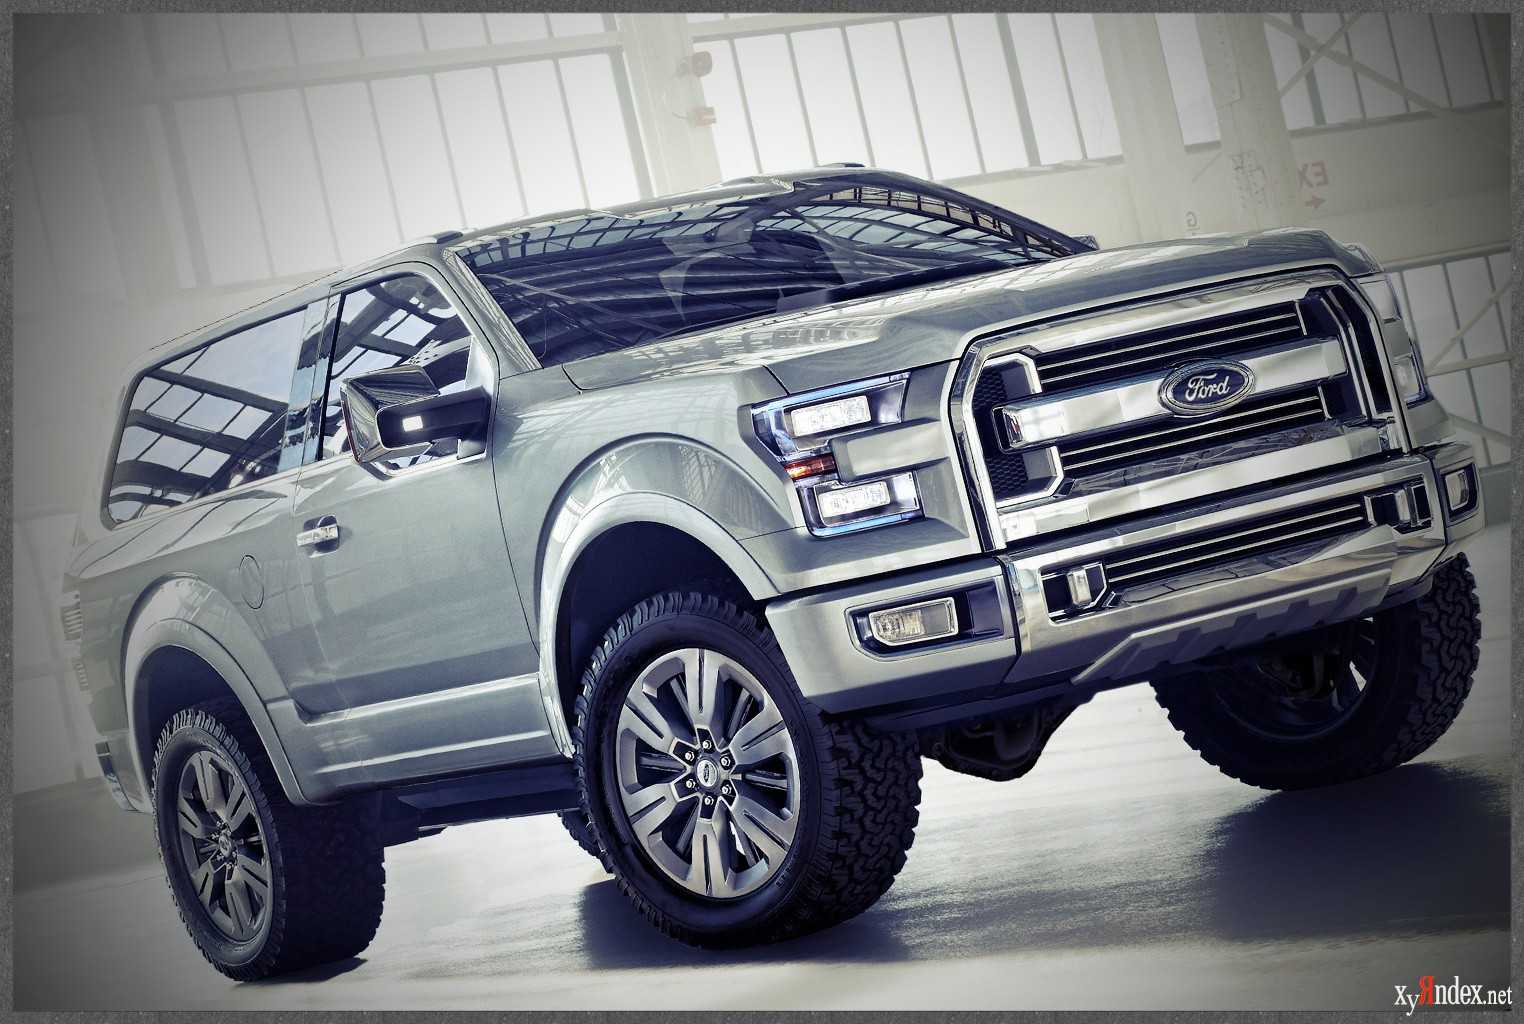 Ford bronco 2021 цены в россии +2 млн! фото, цены, дата выхода и характеристики